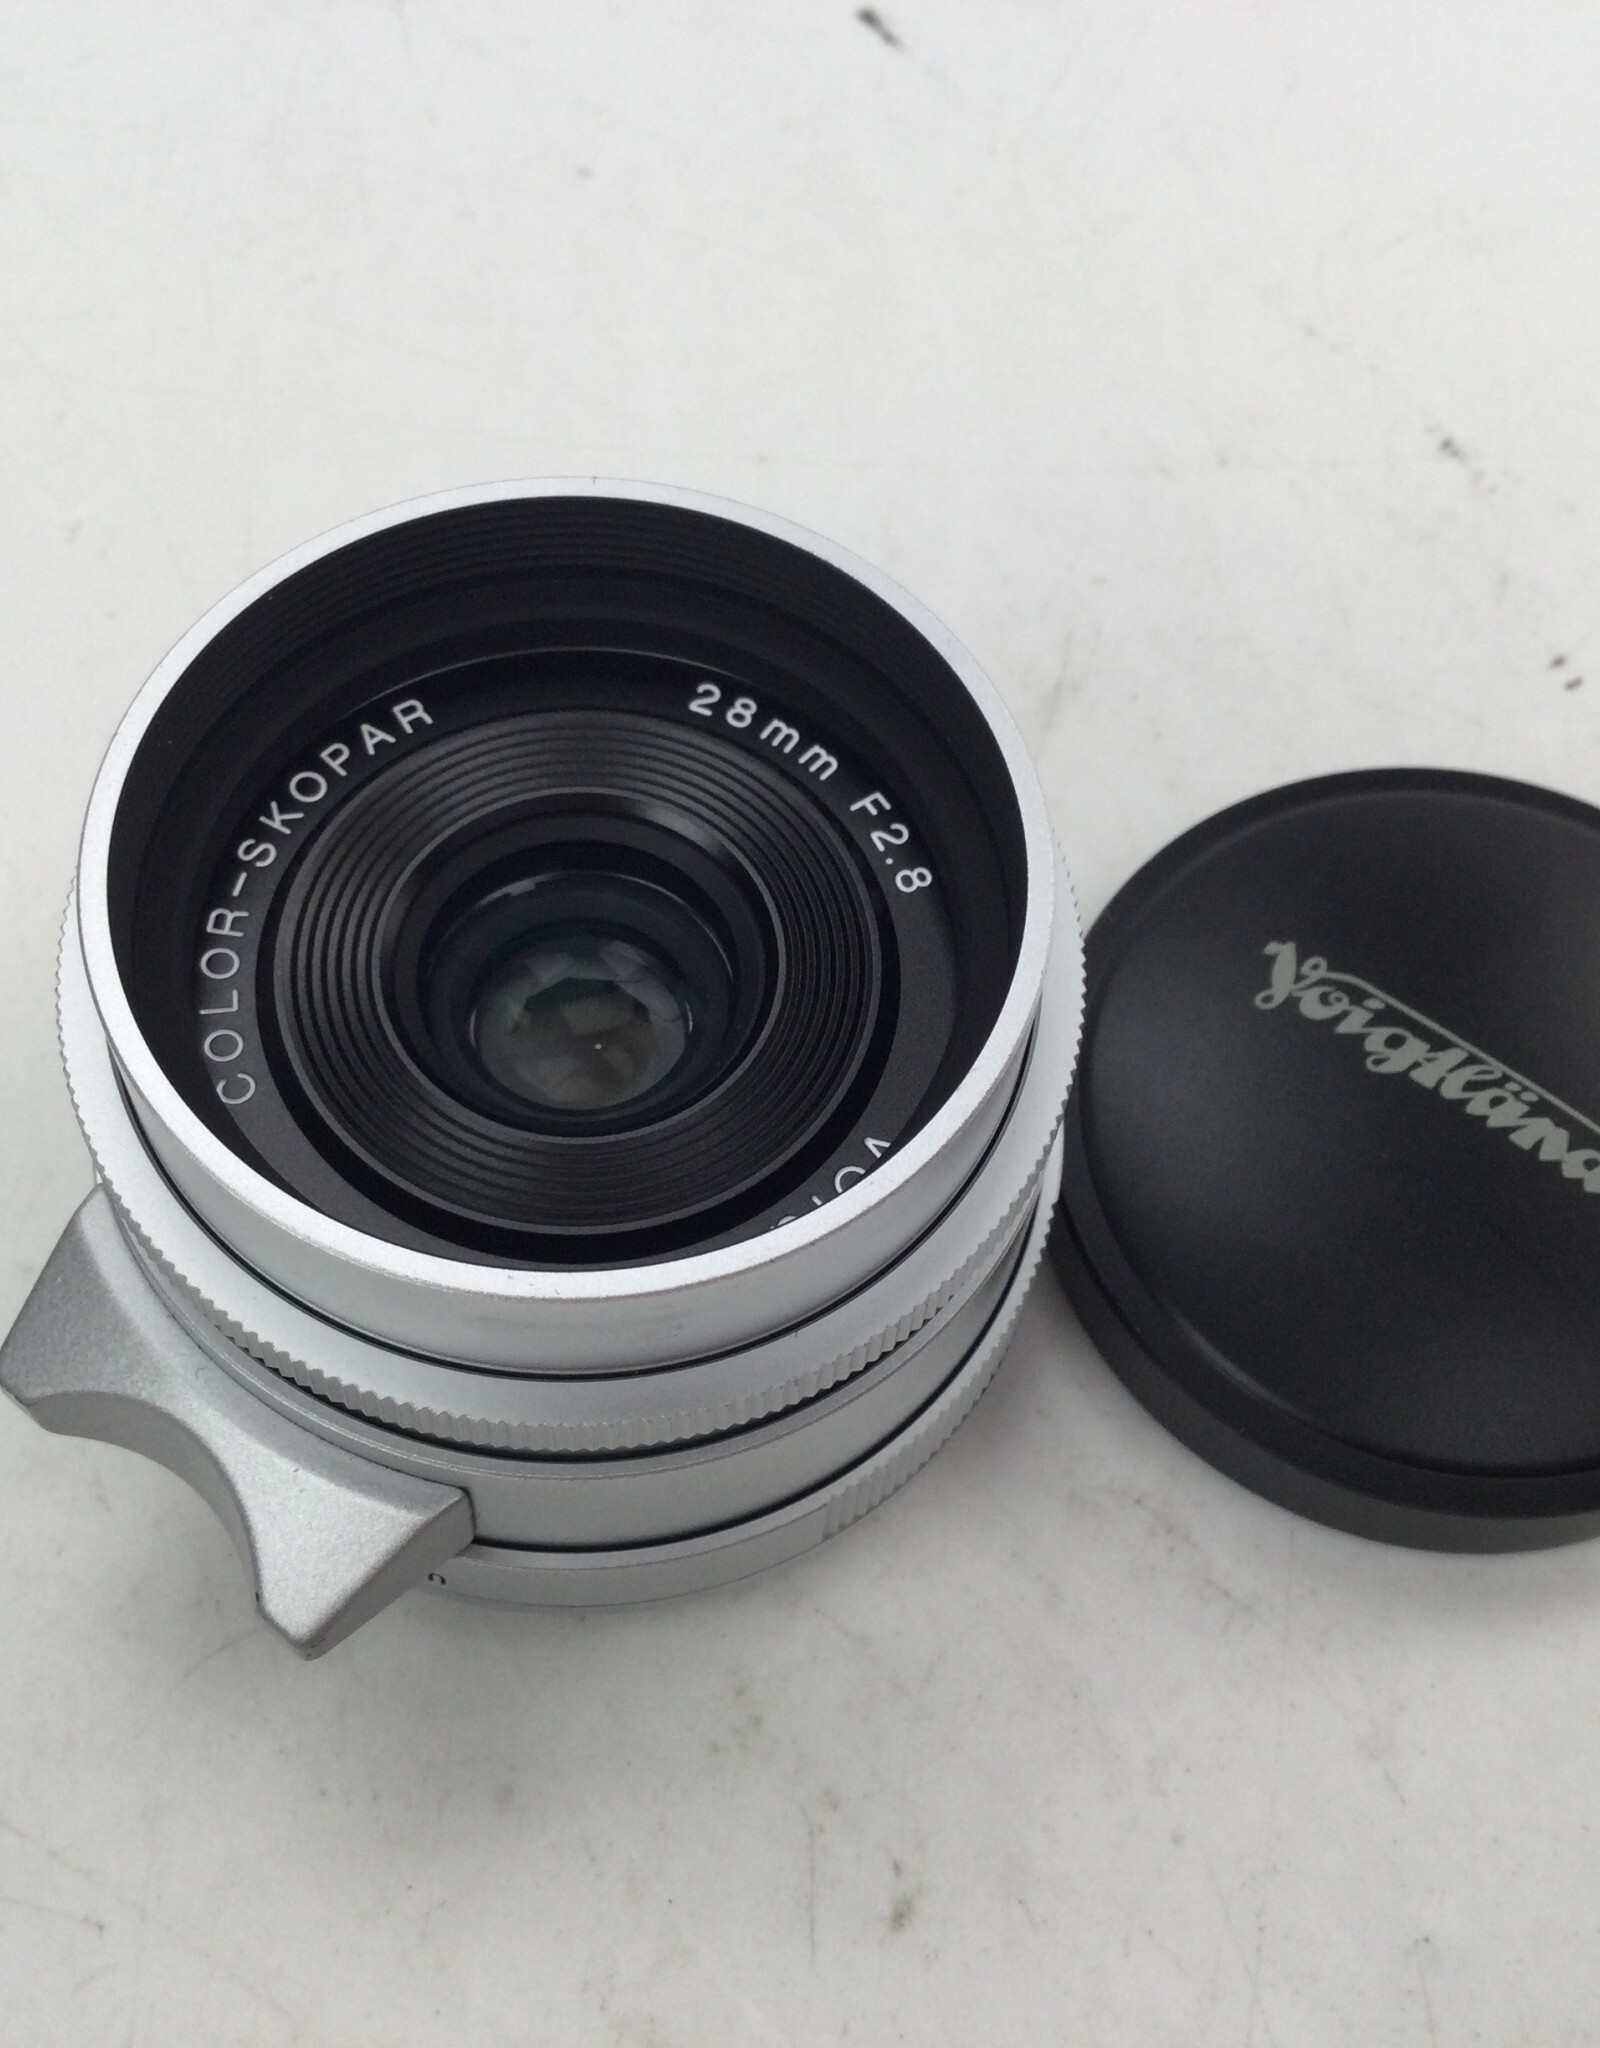 Voigtlander Voigtlander Color Skopar 28mm f2.8 Lens no rear Cap Used Good